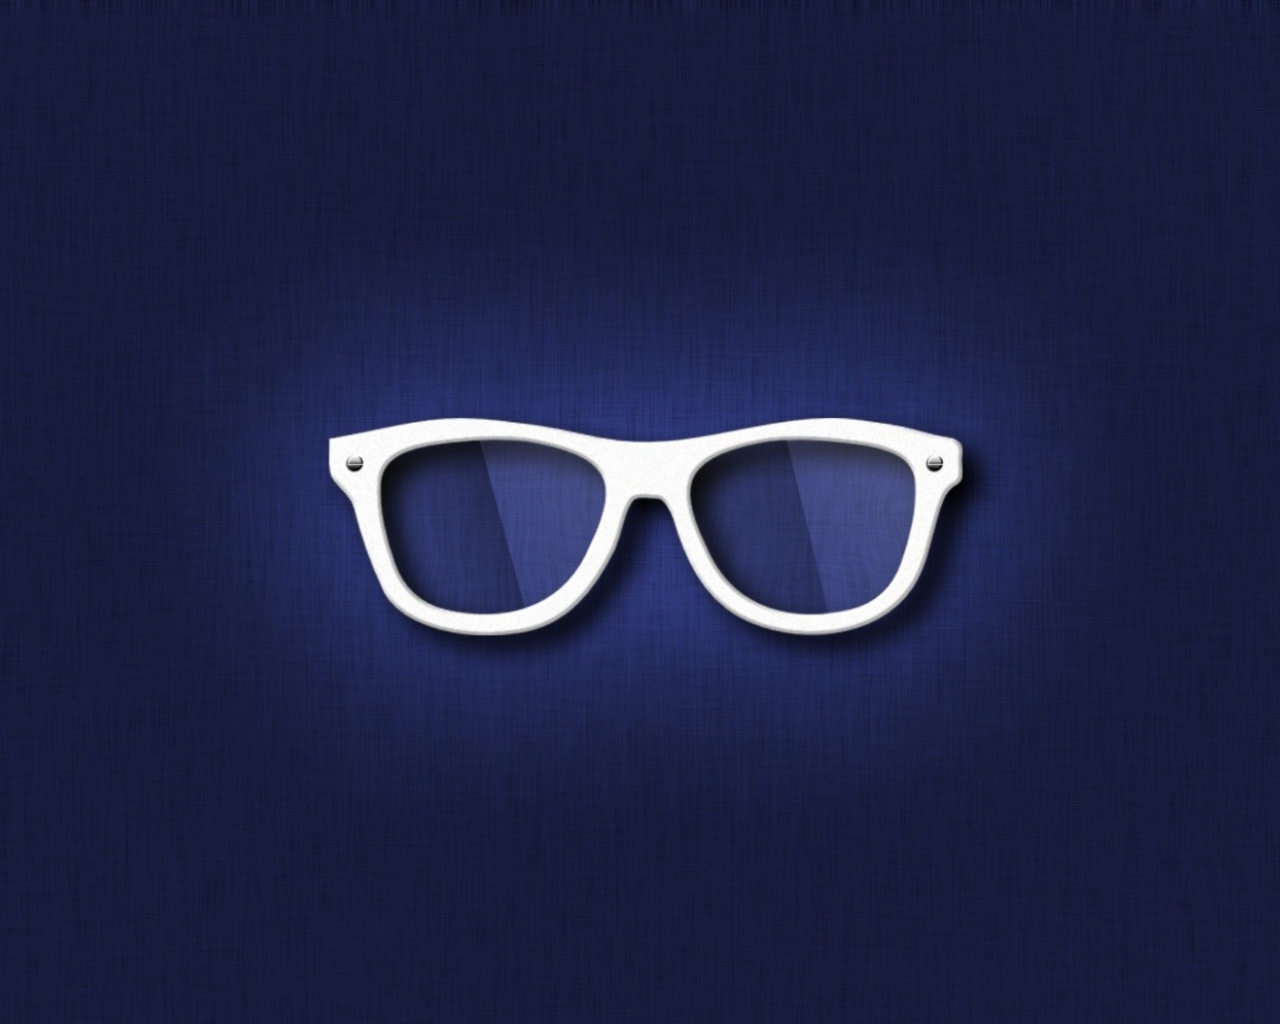 Hipster Glasses Illustration wallpaper 1280x1024